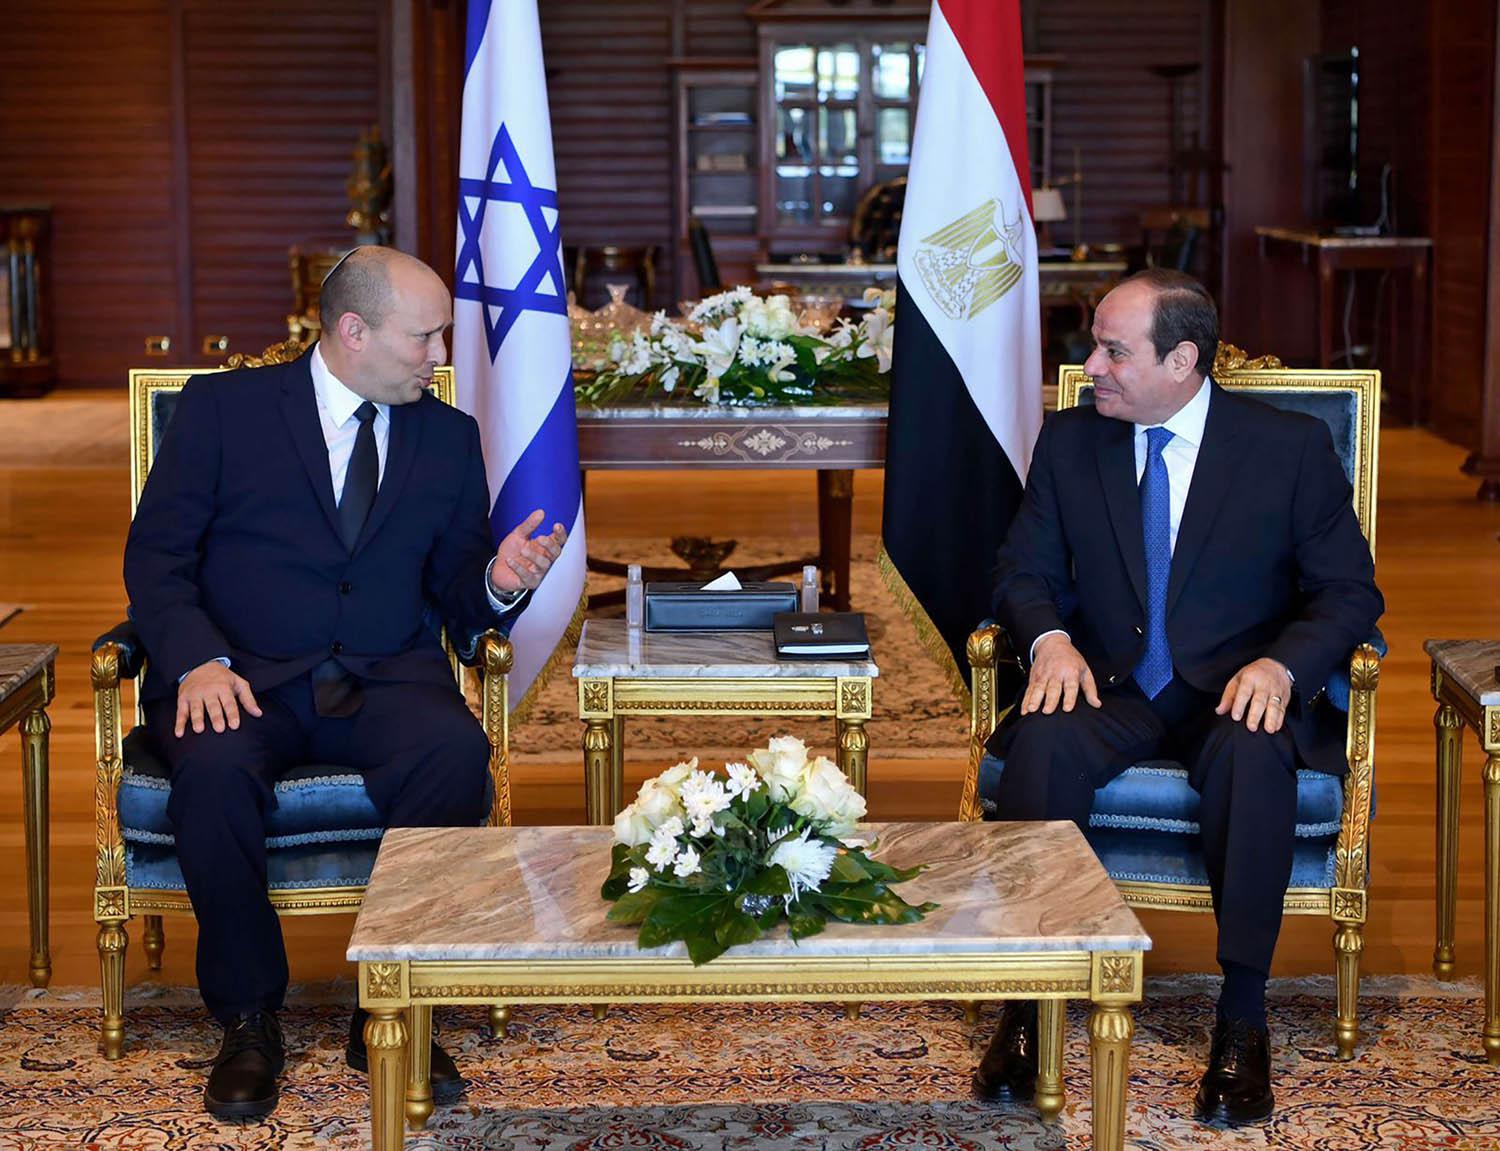 الرئيس المصري عبدالفتاح السيسي ورئيس الوزراء الإسرائيلي نفتالي بينيت في لقاء في شرم الشيخ